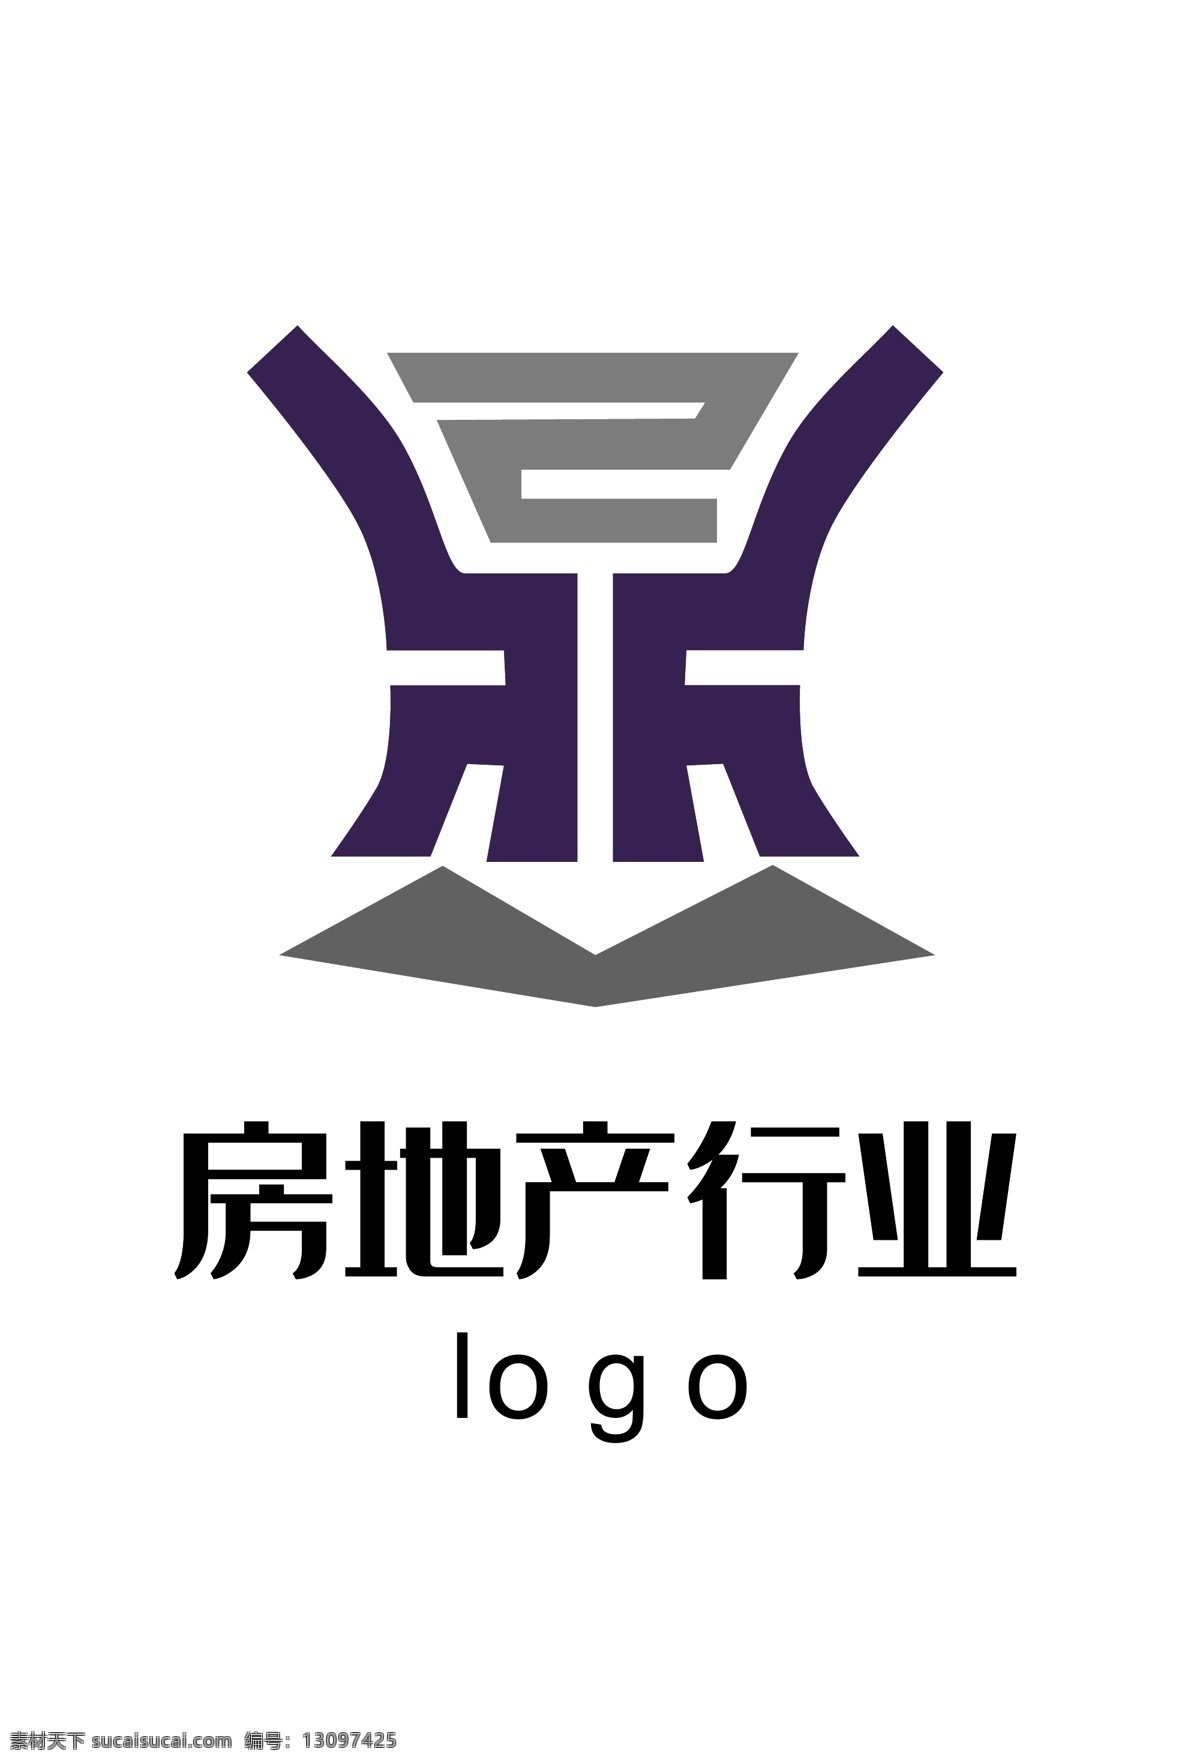 商业 行业 s 型 企业 logo 房地产 商务 大气 平面logo